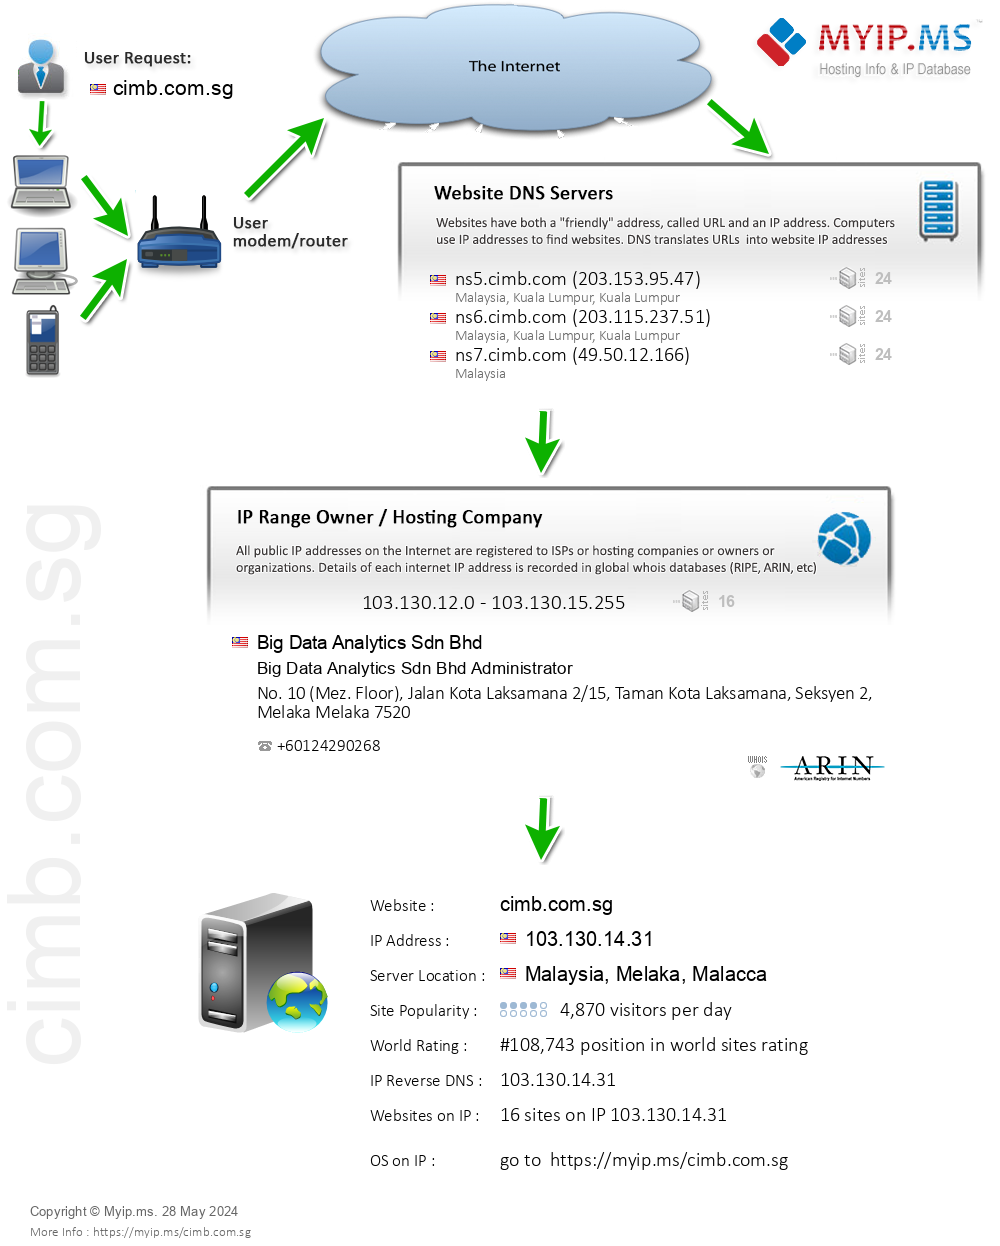 Cimb.com.sg - Website Hosting Visual IP Diagram